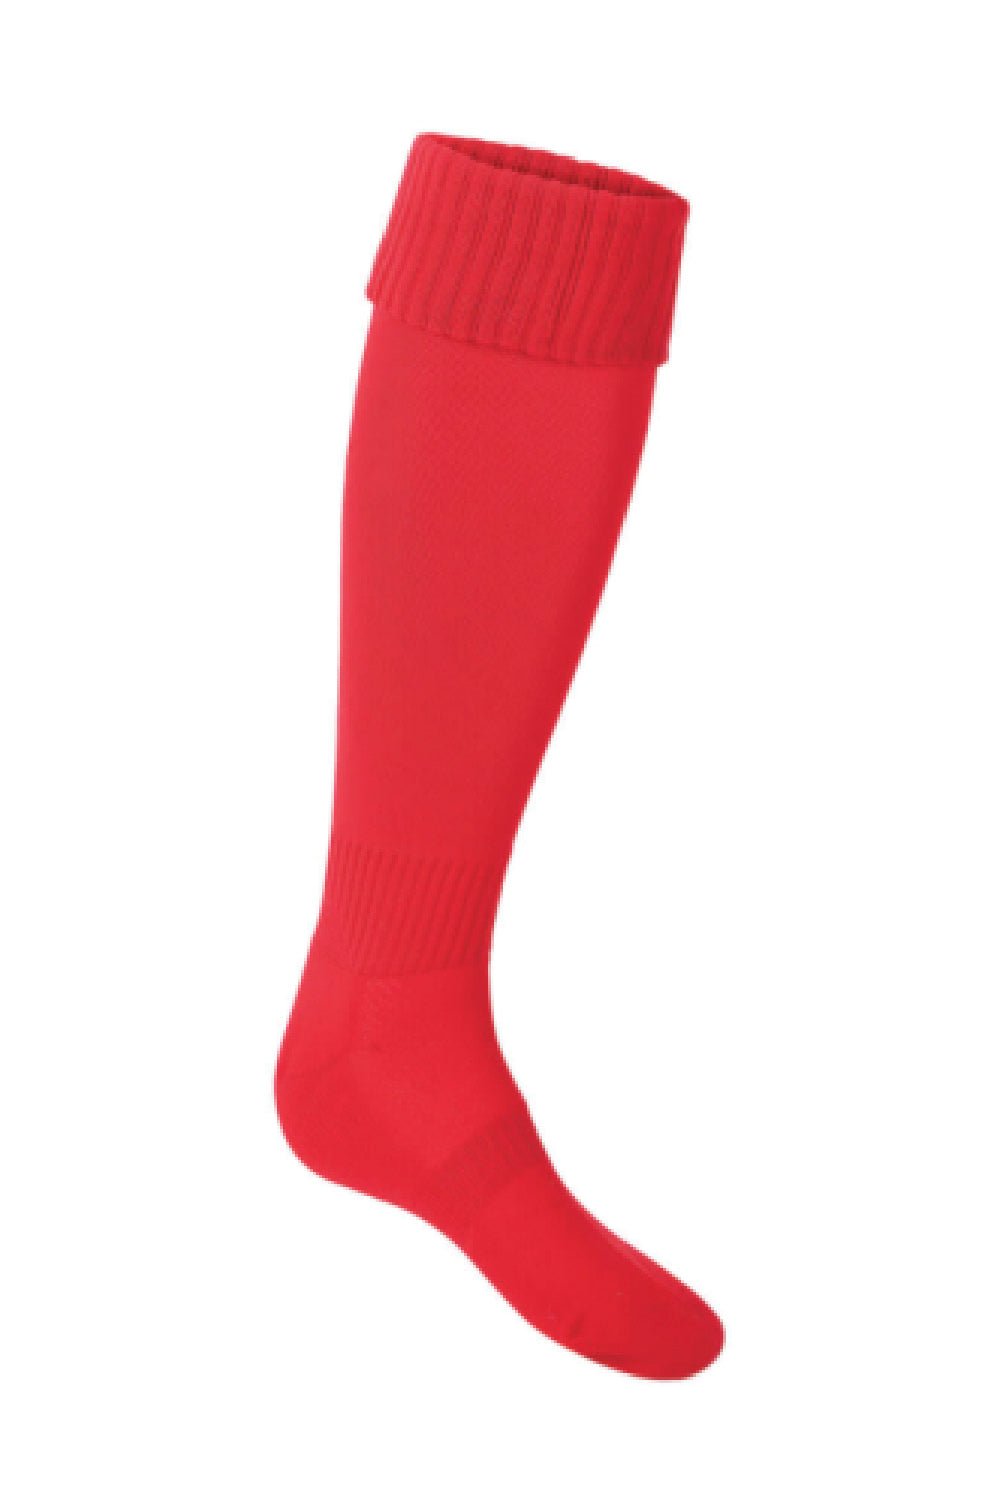 Orsett Heath PE Sock - Uniformwise Schoolwear